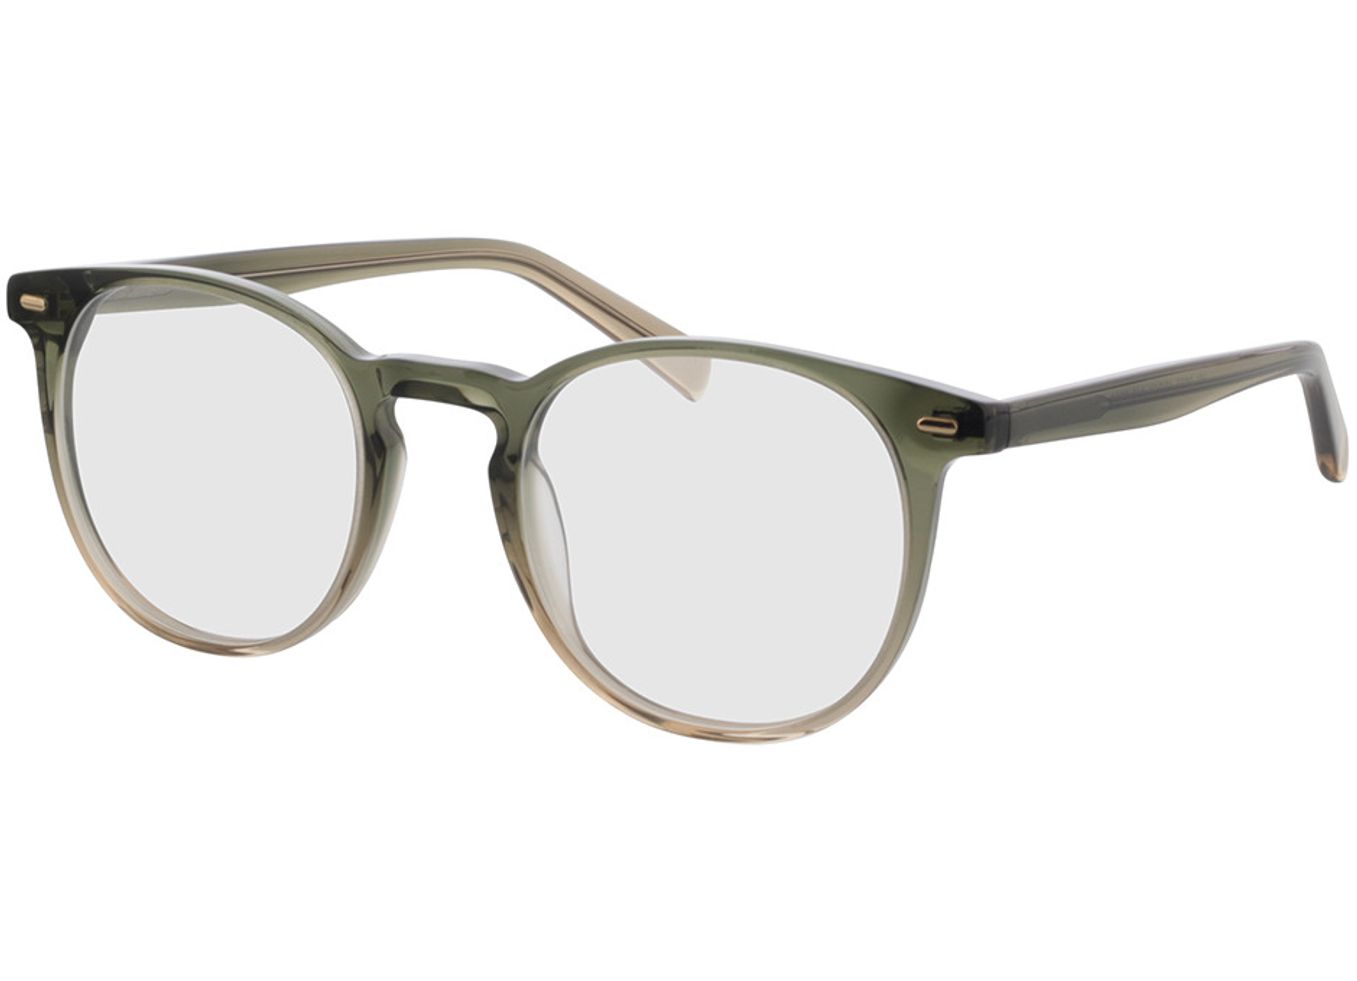 Fargo - grün/braun Gleitsichtbrille, Vollrand, Rund von Brille24 Collection